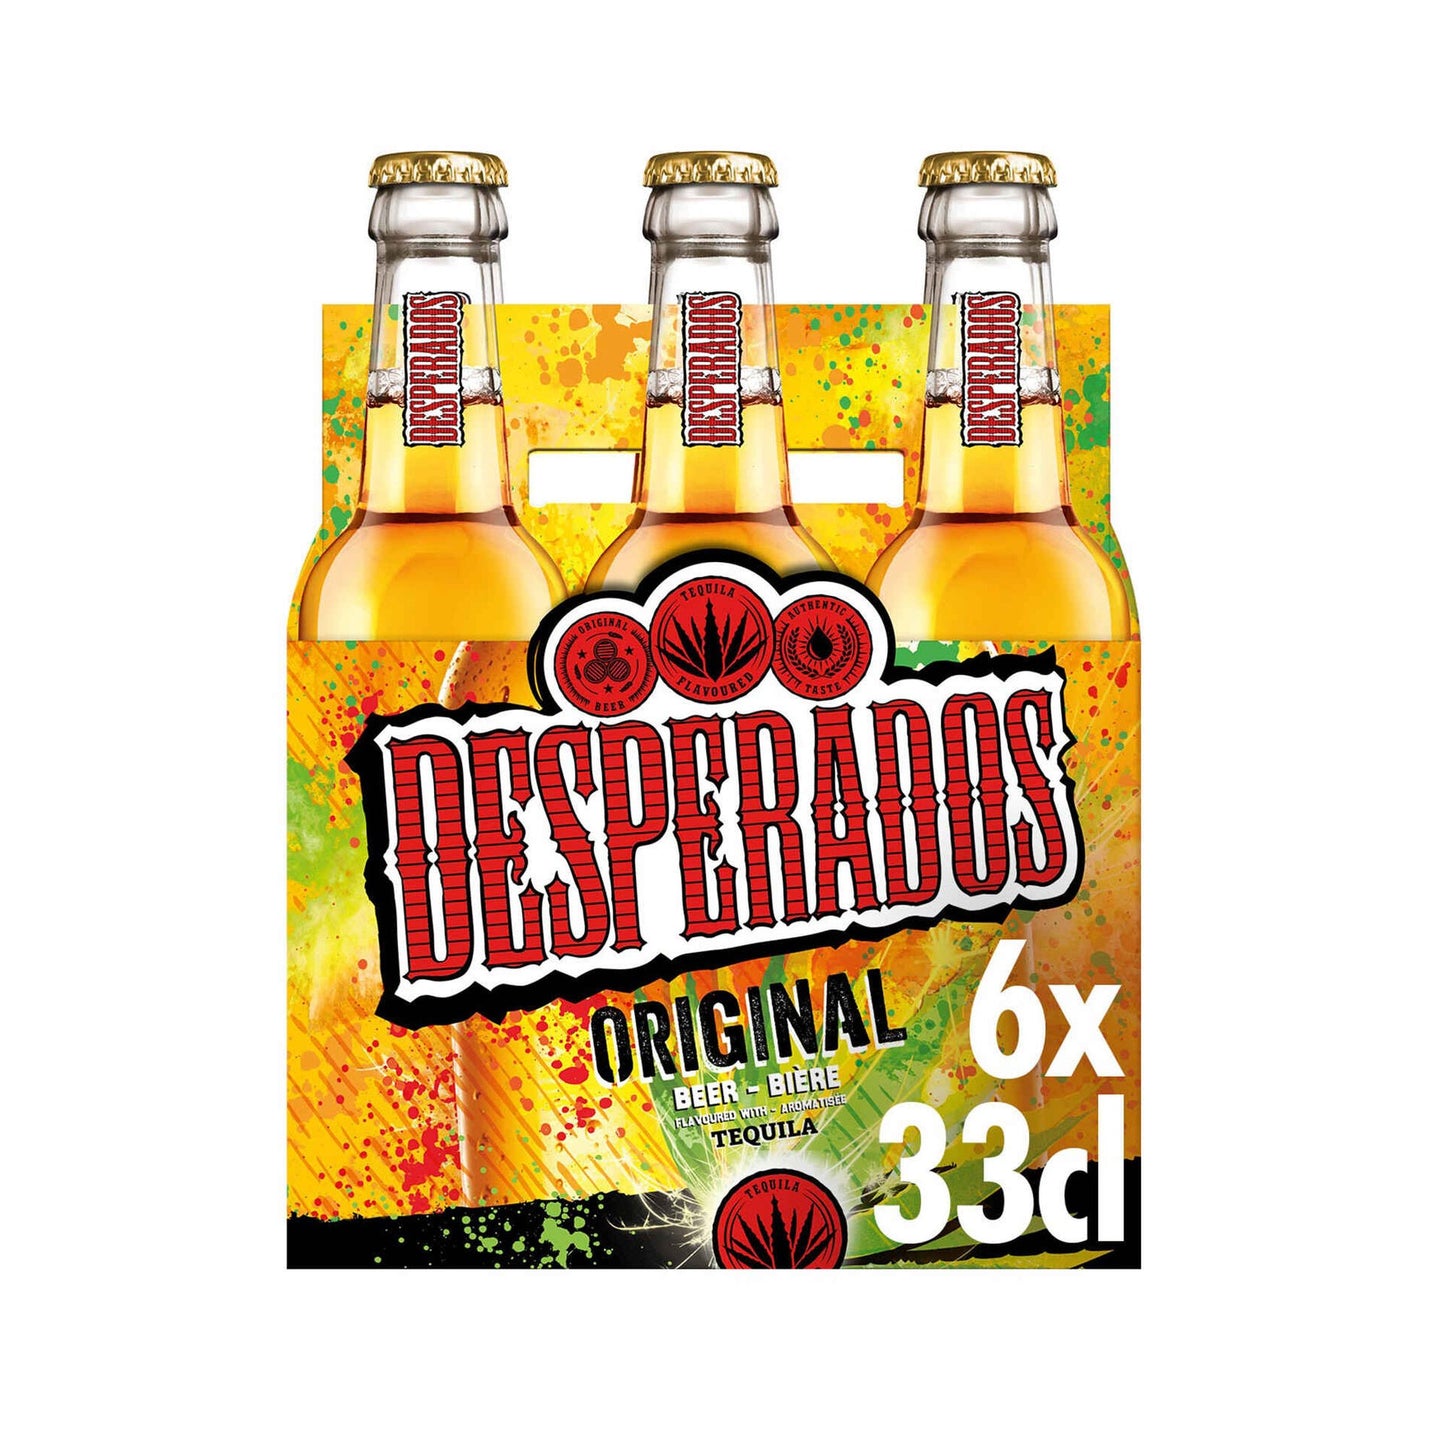 Desperados 330ml Beer with Tequila 5.9% per Unit